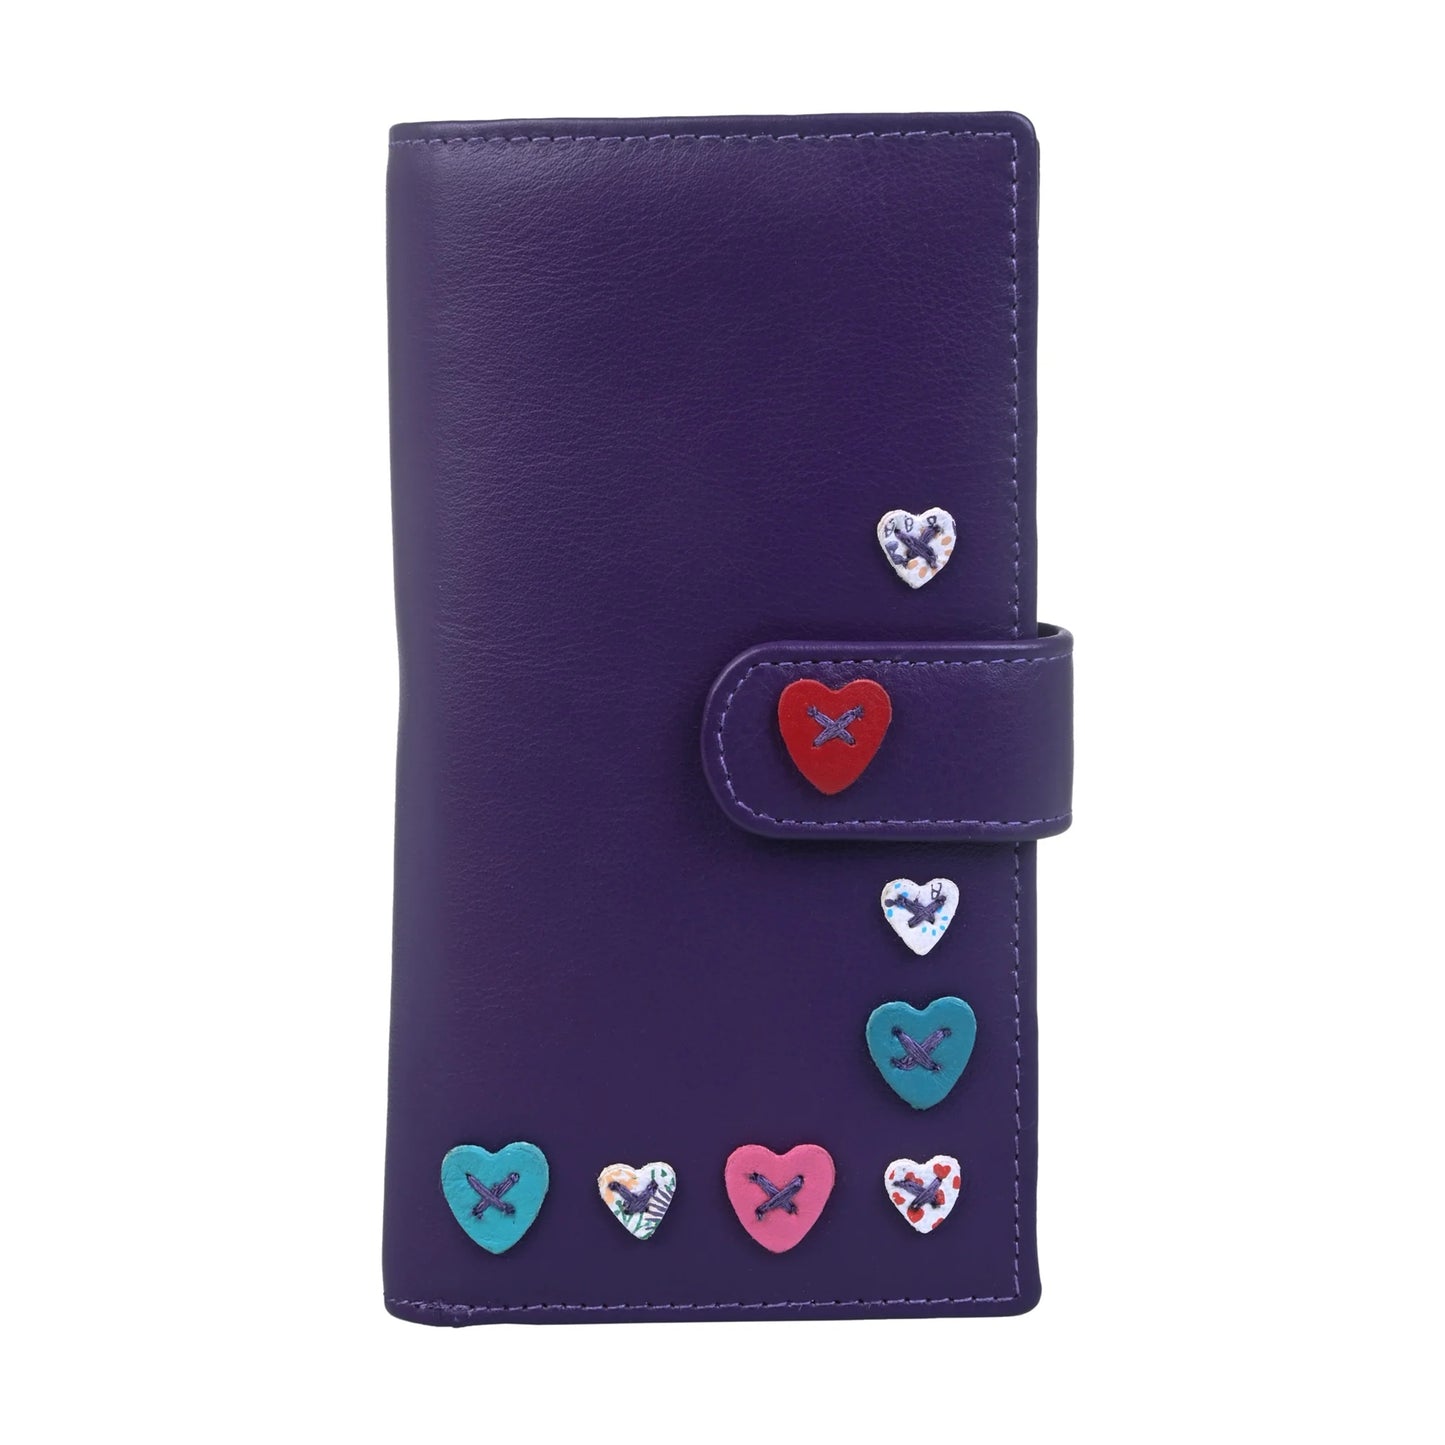 Lucy Large Tri Fold Leather Purse - Purple